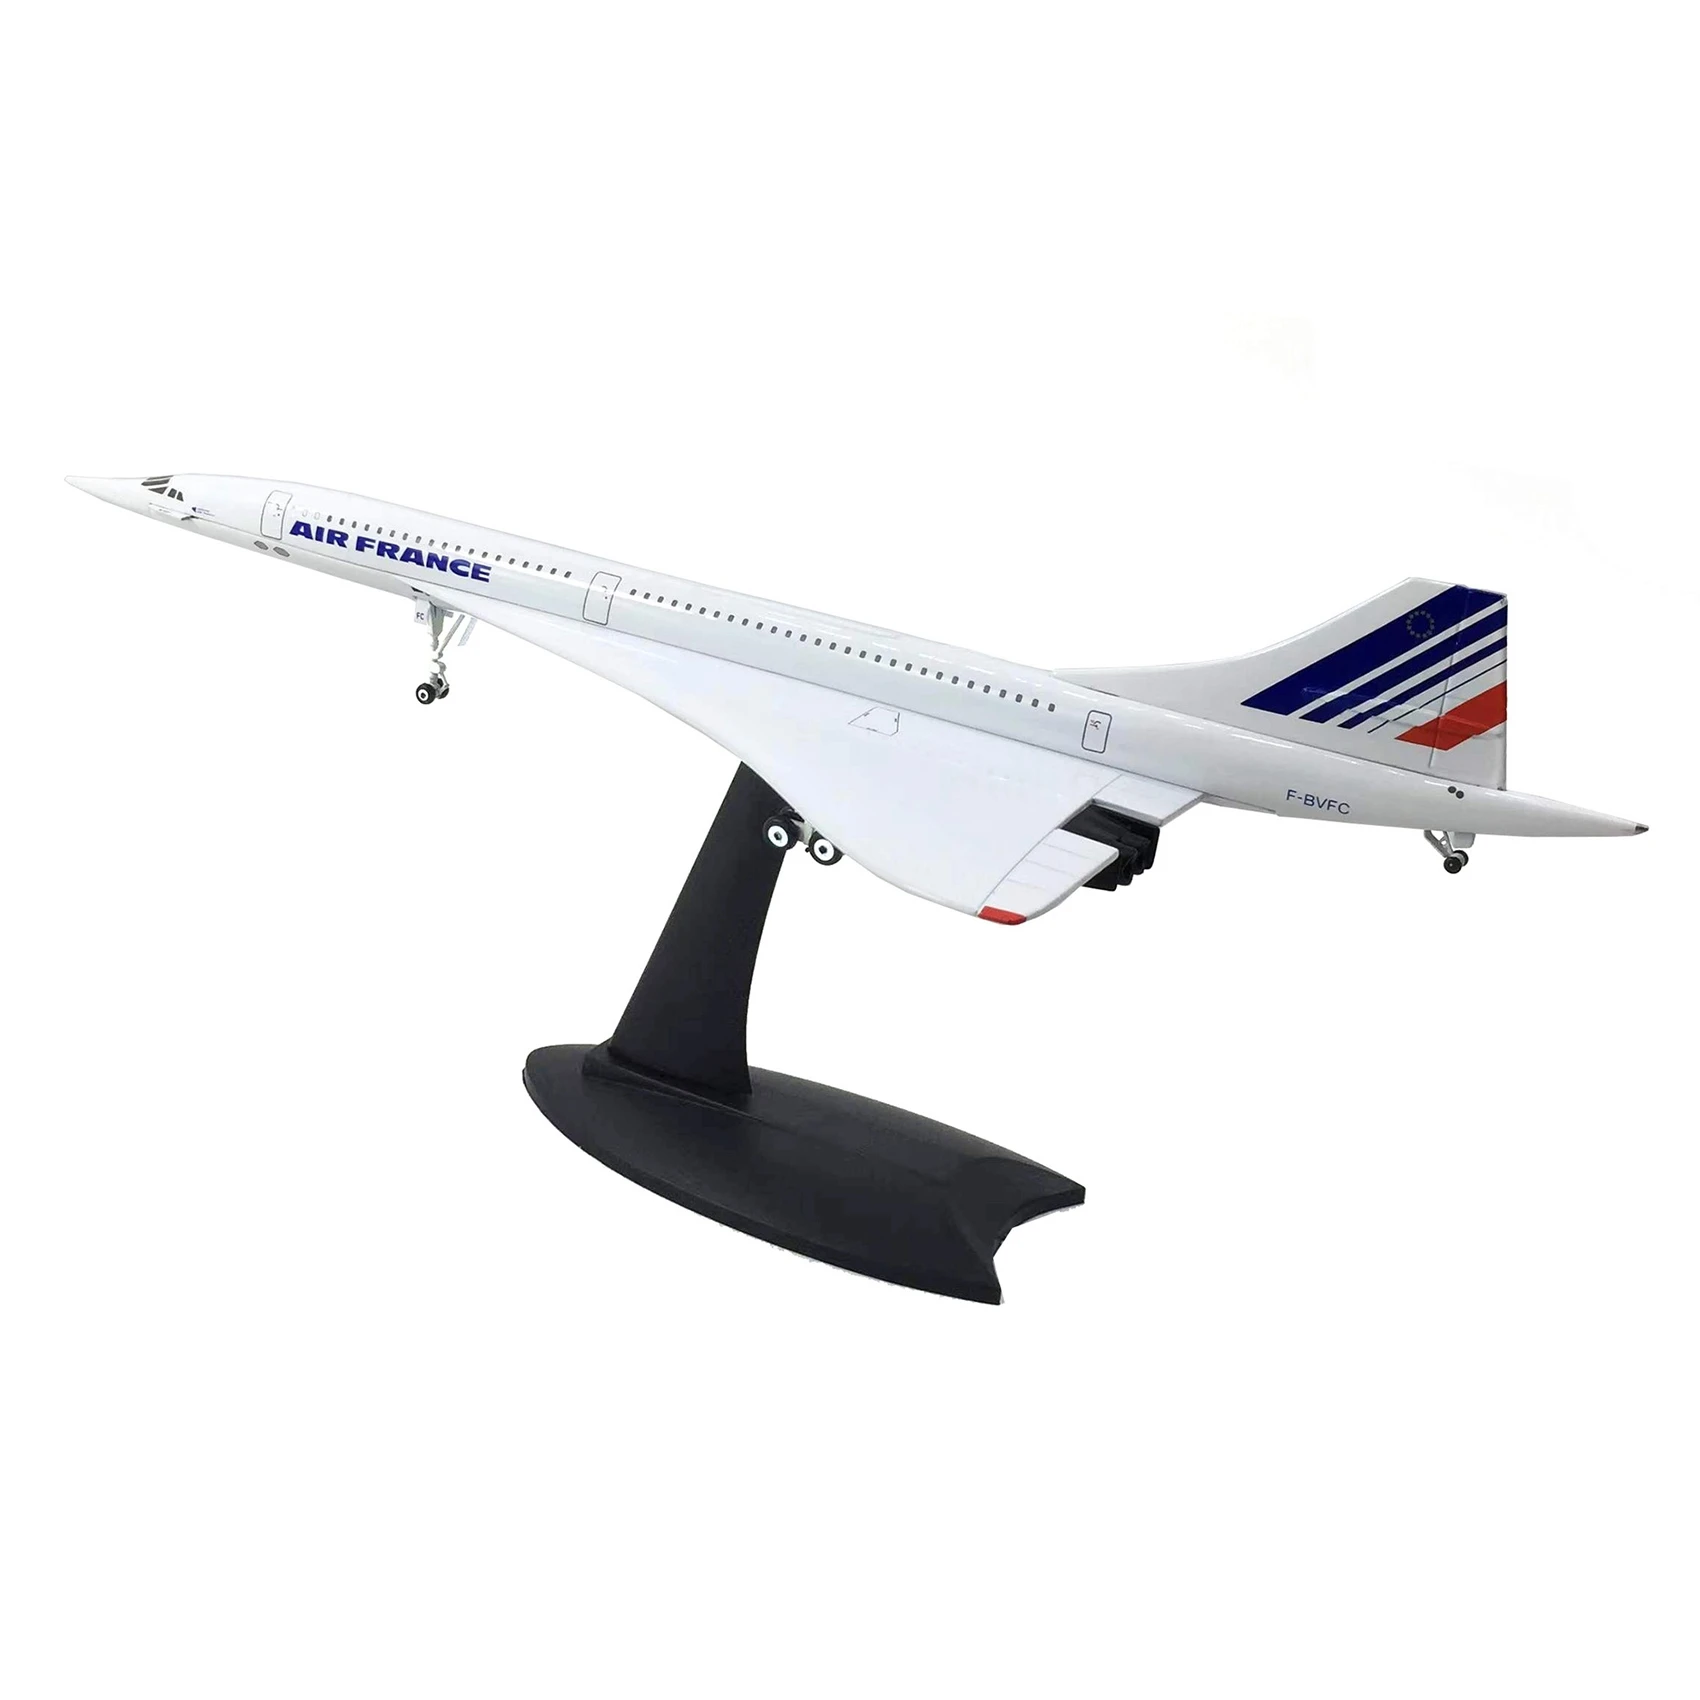 Модель Сверхзвукового пассажирского самолета Concorde 1/200 Air France Airways для коллекции статических дисплеев